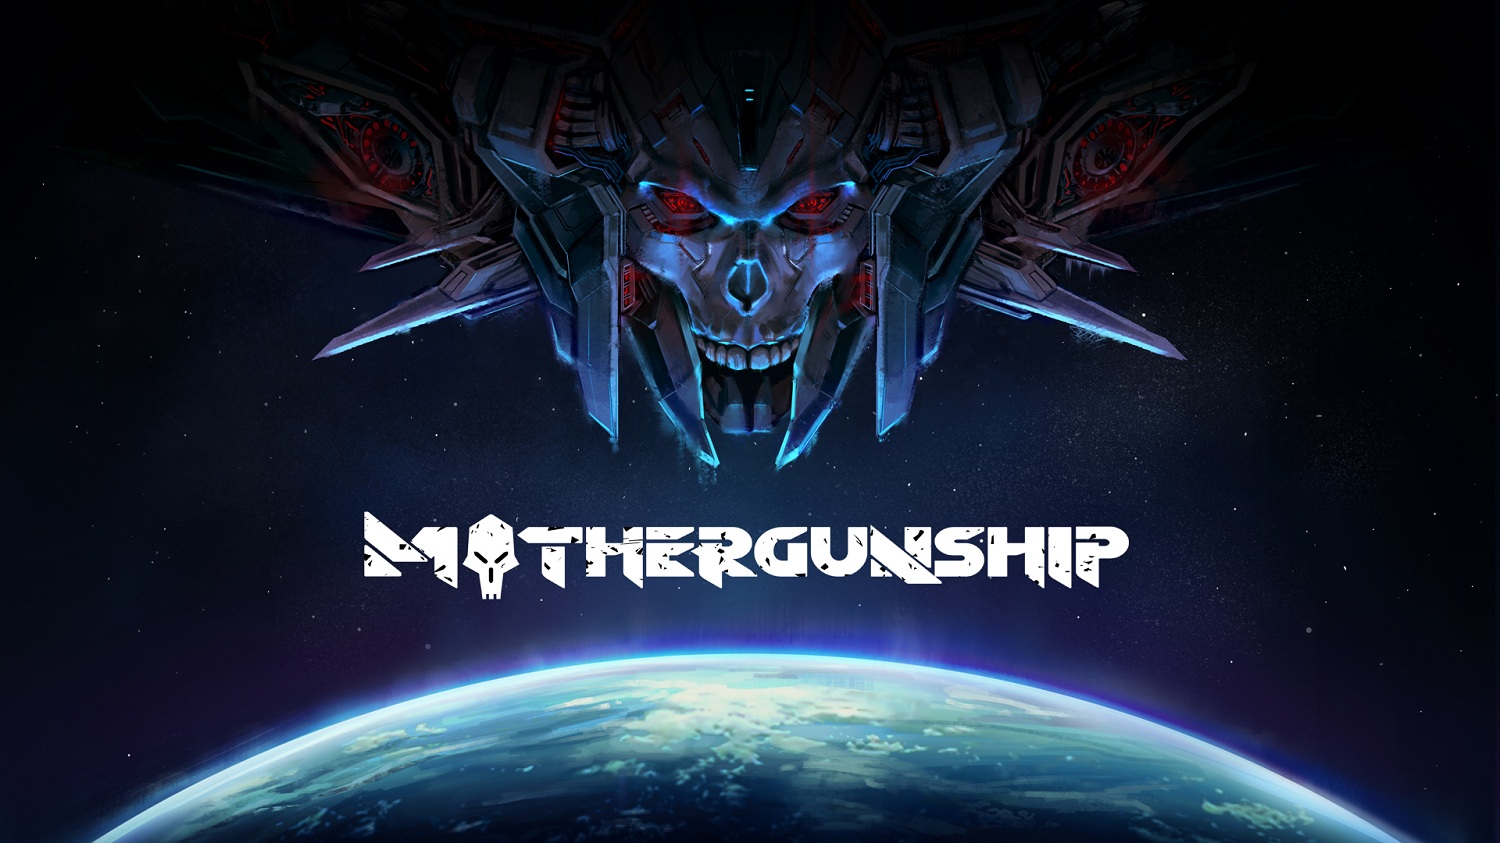 Mothergunship debutará en PS4, Xbox One y PC el próximo 17 de julio | Nuevo tráiler